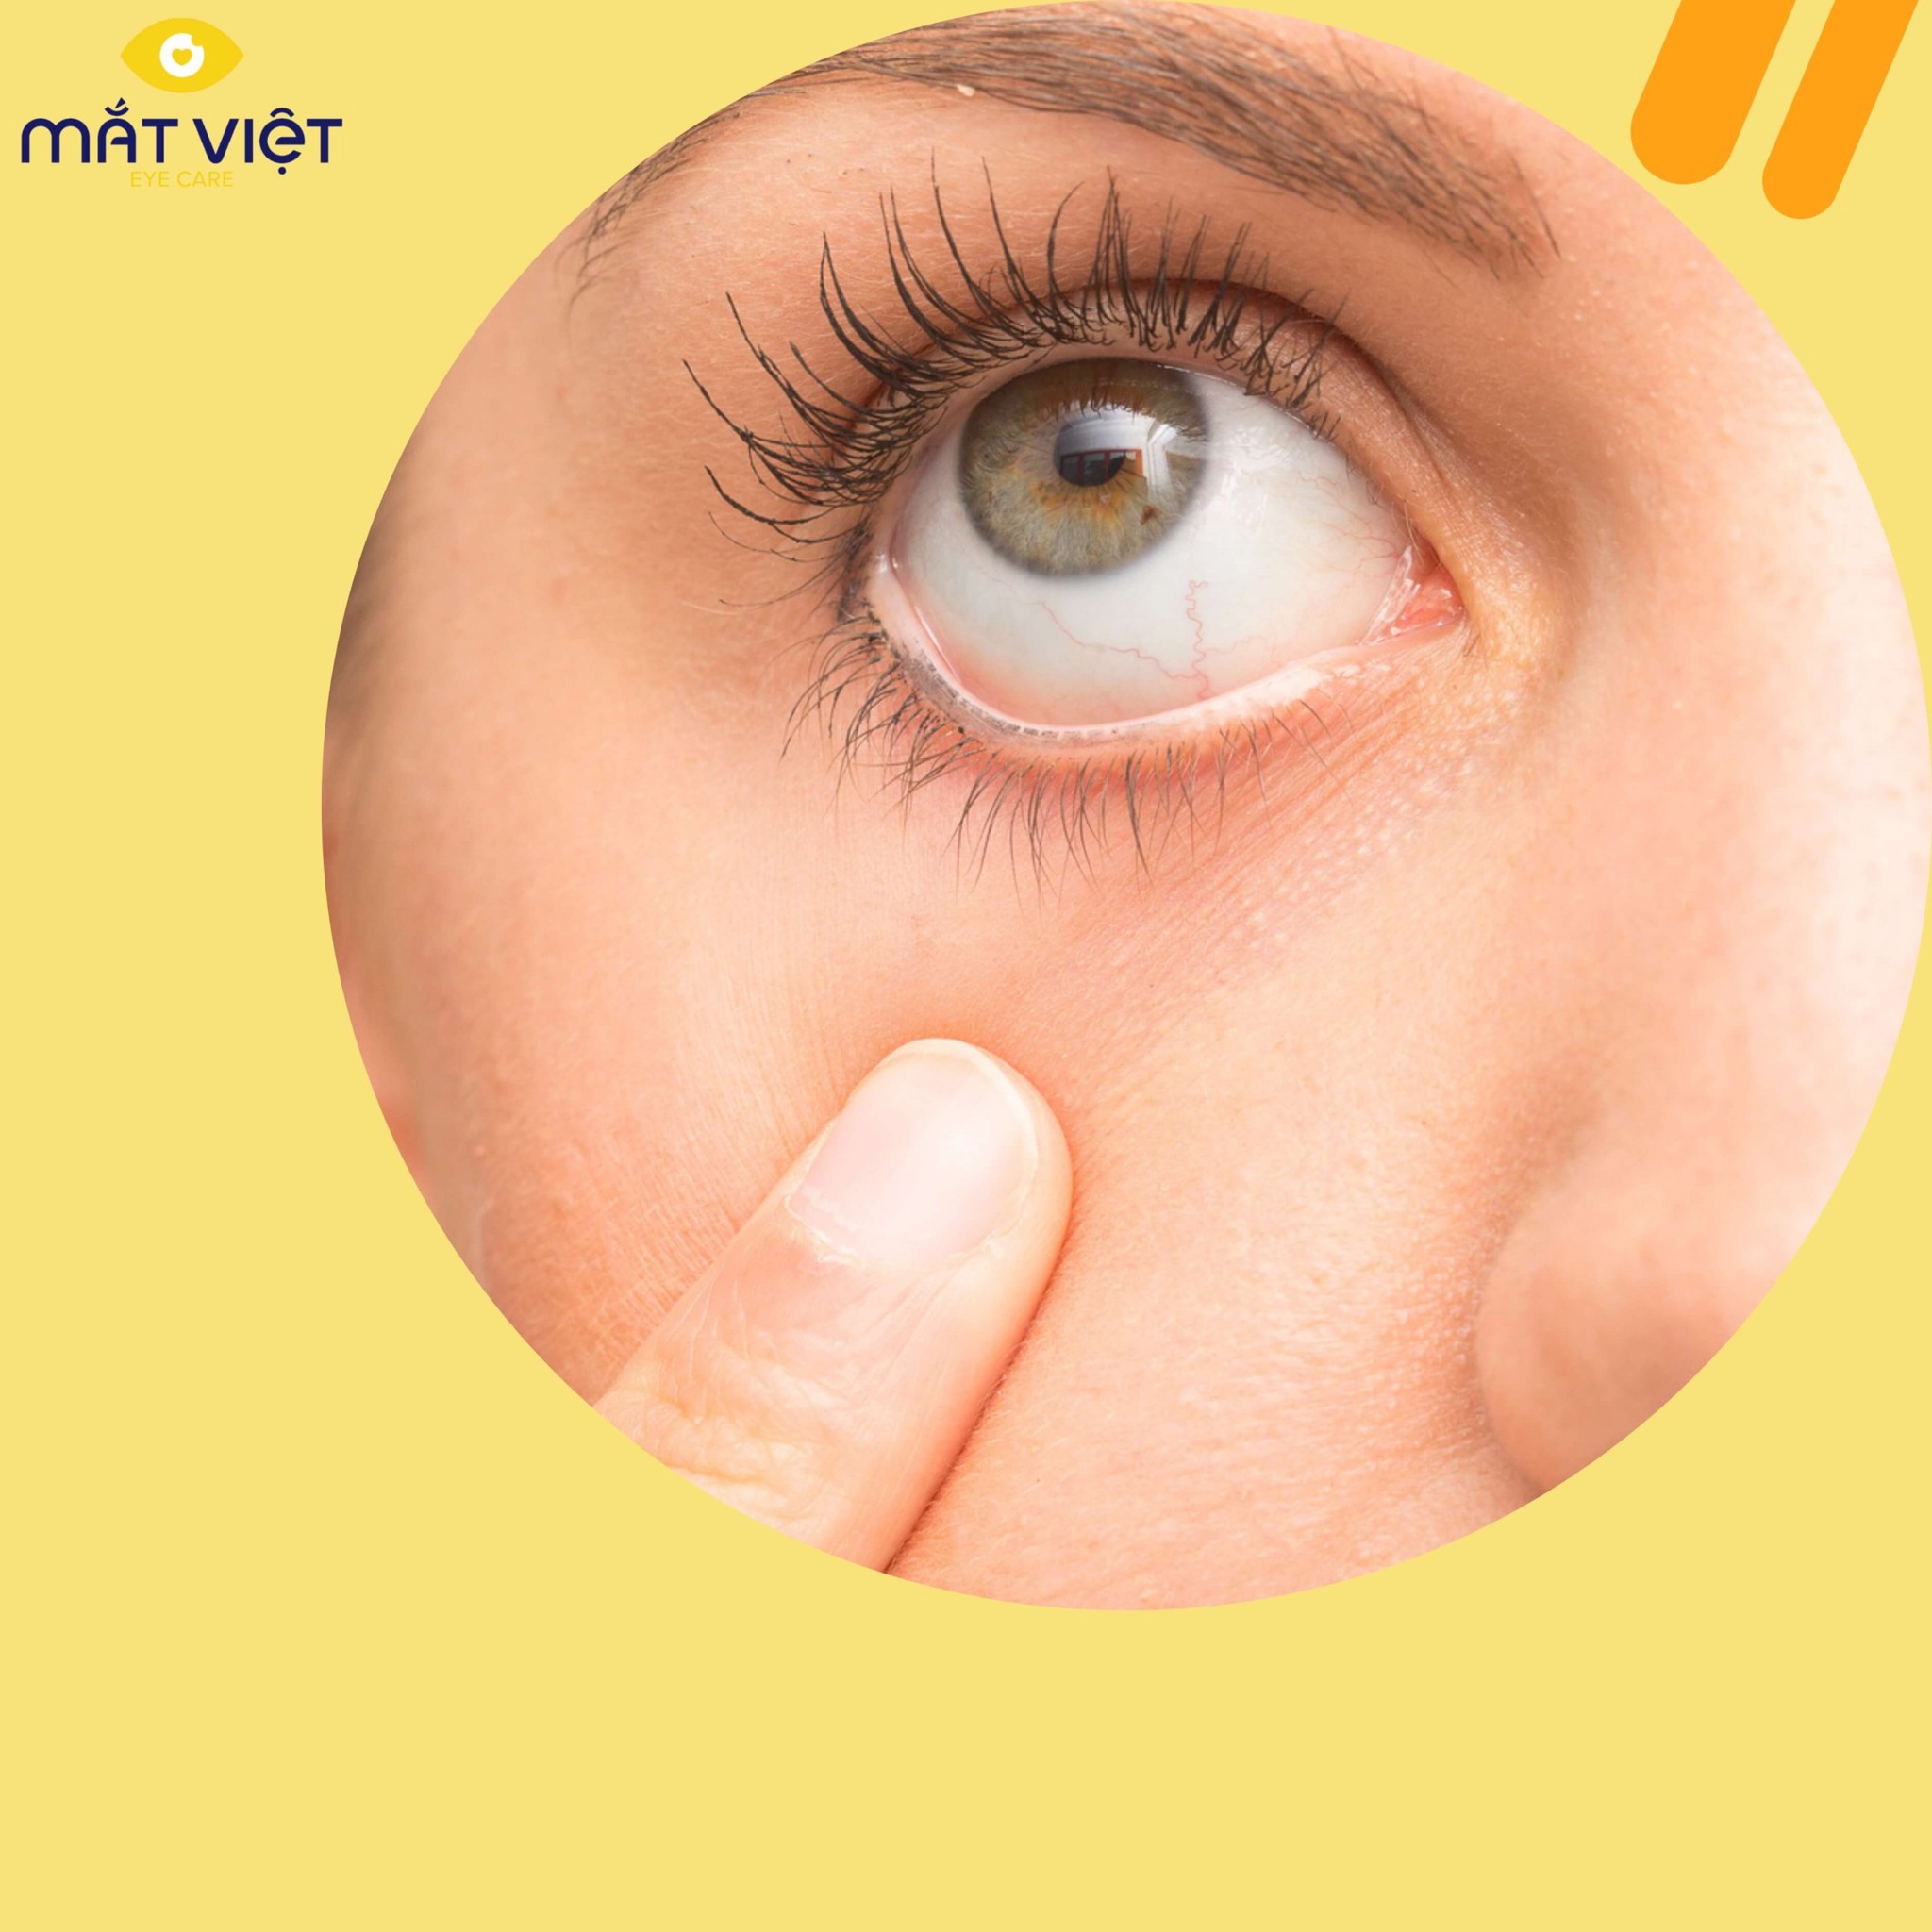 Bệnh khô mắt là gì? Phân biệt khô mắt và dị ứng mắt mùa lạnh